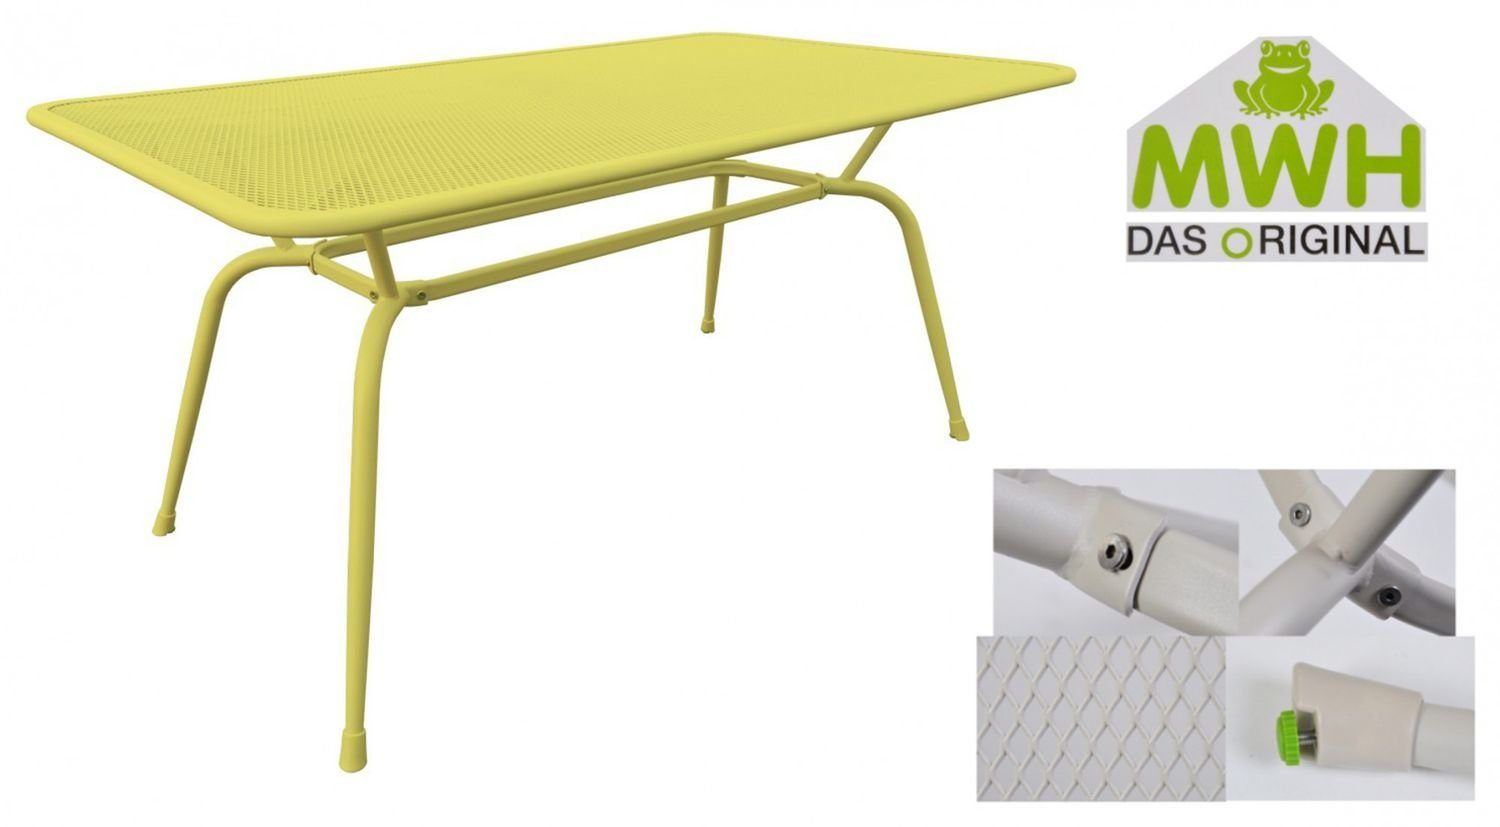 MWH Streckmetalltisch Tisch Conello gelb MWH-Tisch 160x90x74cm Gartentisch Gartentisch